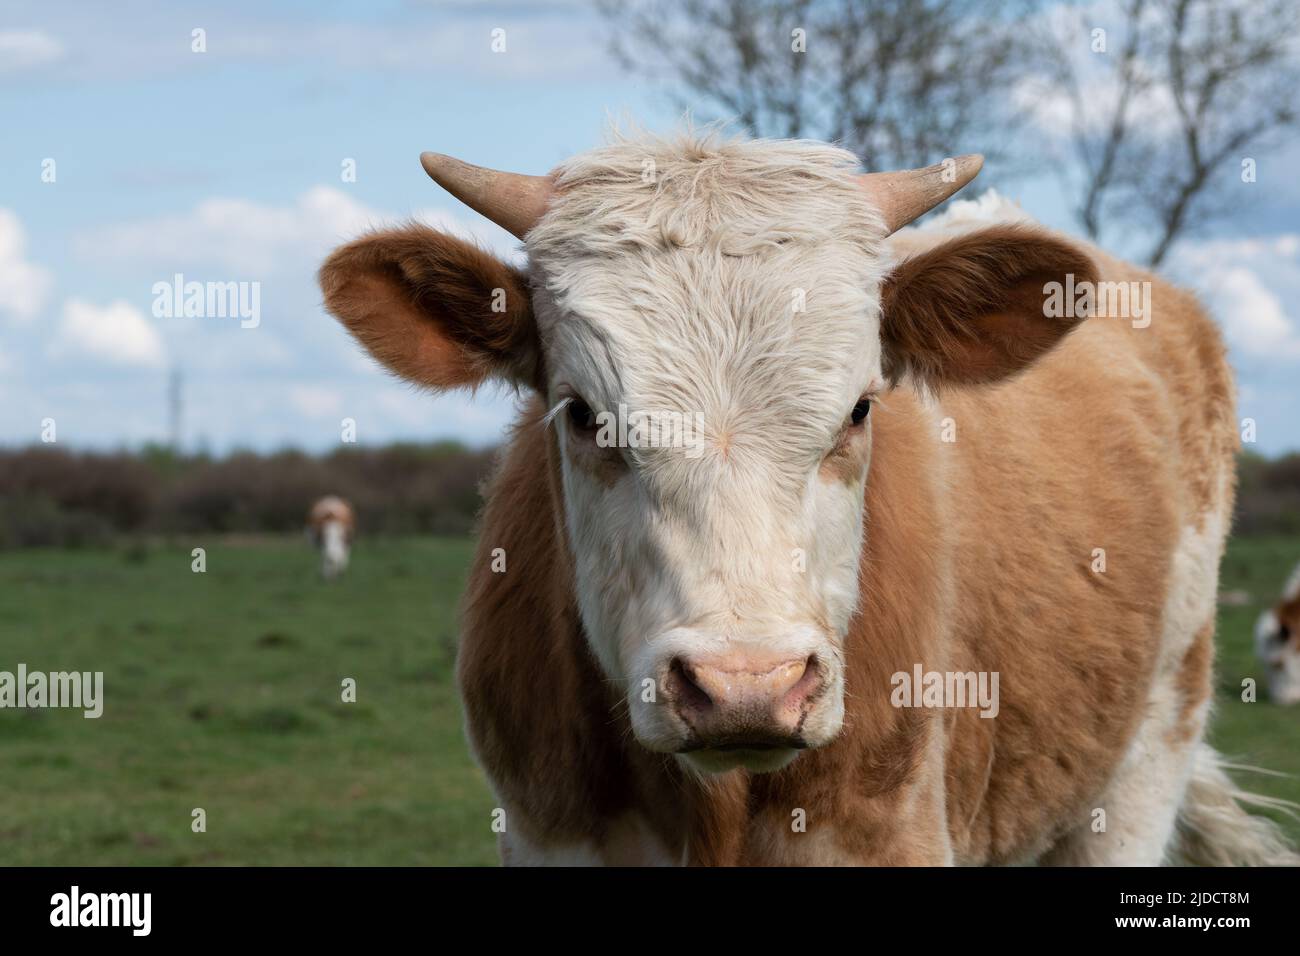 Primer plano cabeza de vaca con cuernos pequeños, parte del cuerpo de animales domésticos con nariz húmeda al aire libre Foto de stock